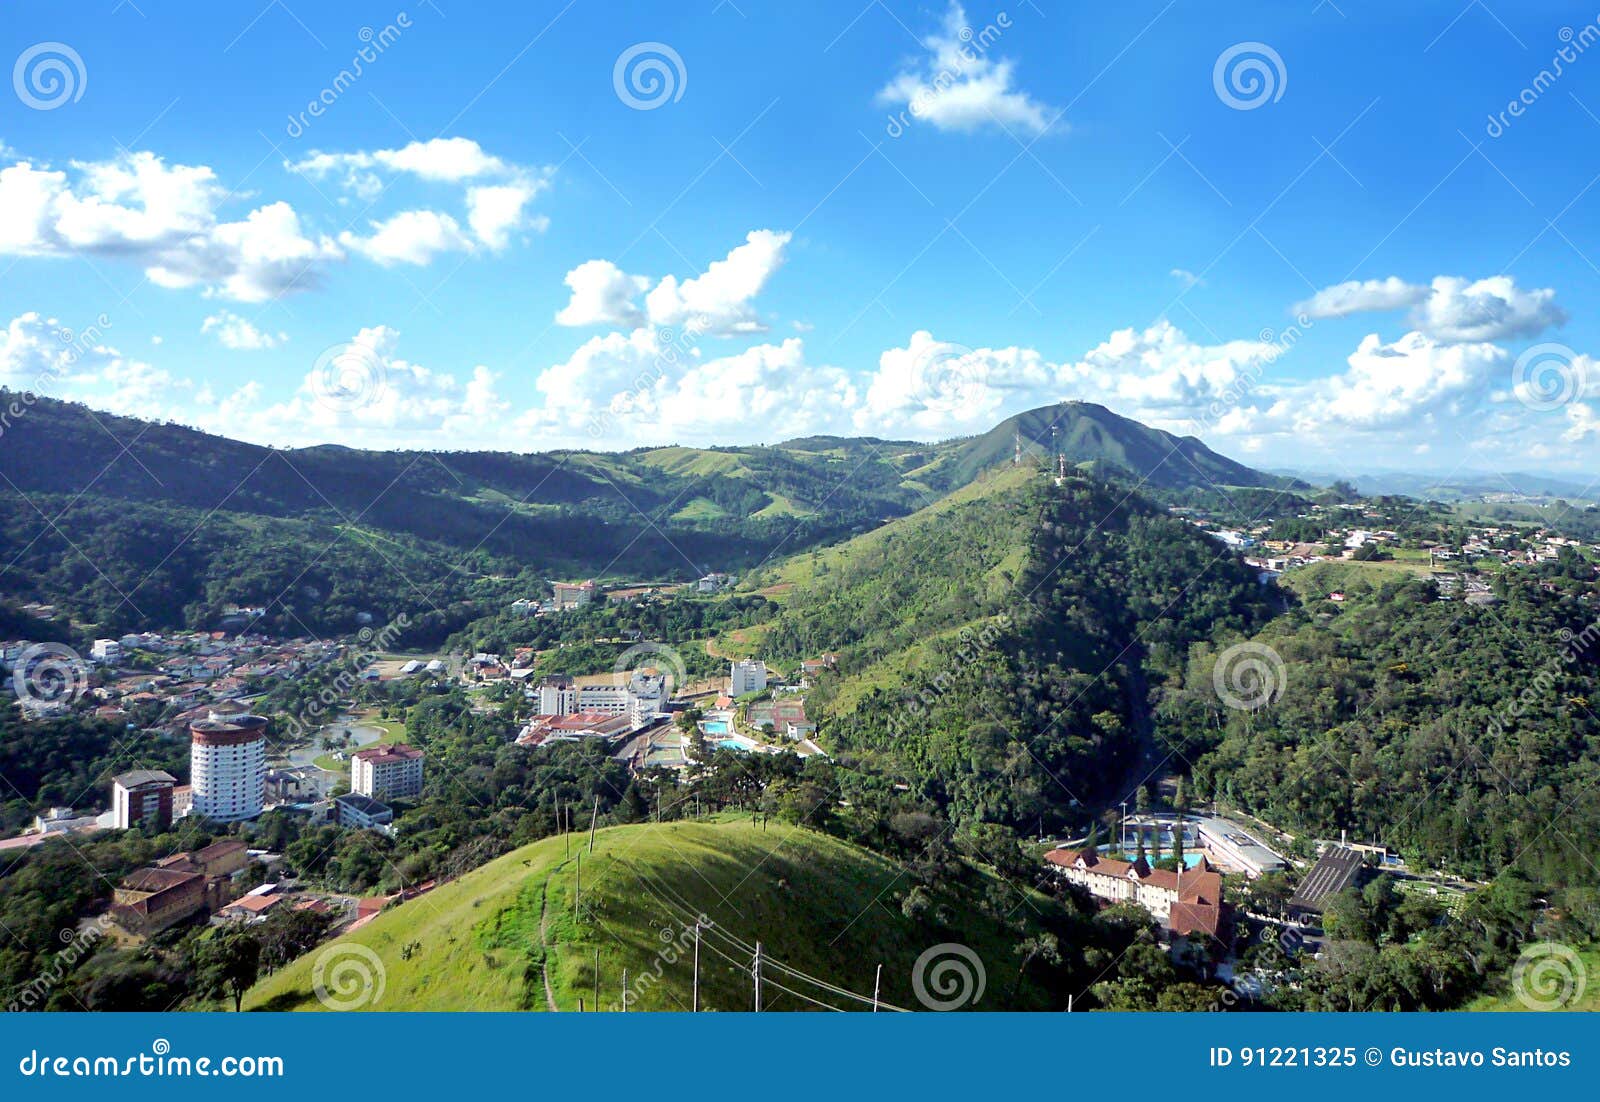 ÃÂguas de lindÃÂ³ia/sp - brazil: landscape with mountains against a blue sky with clouds